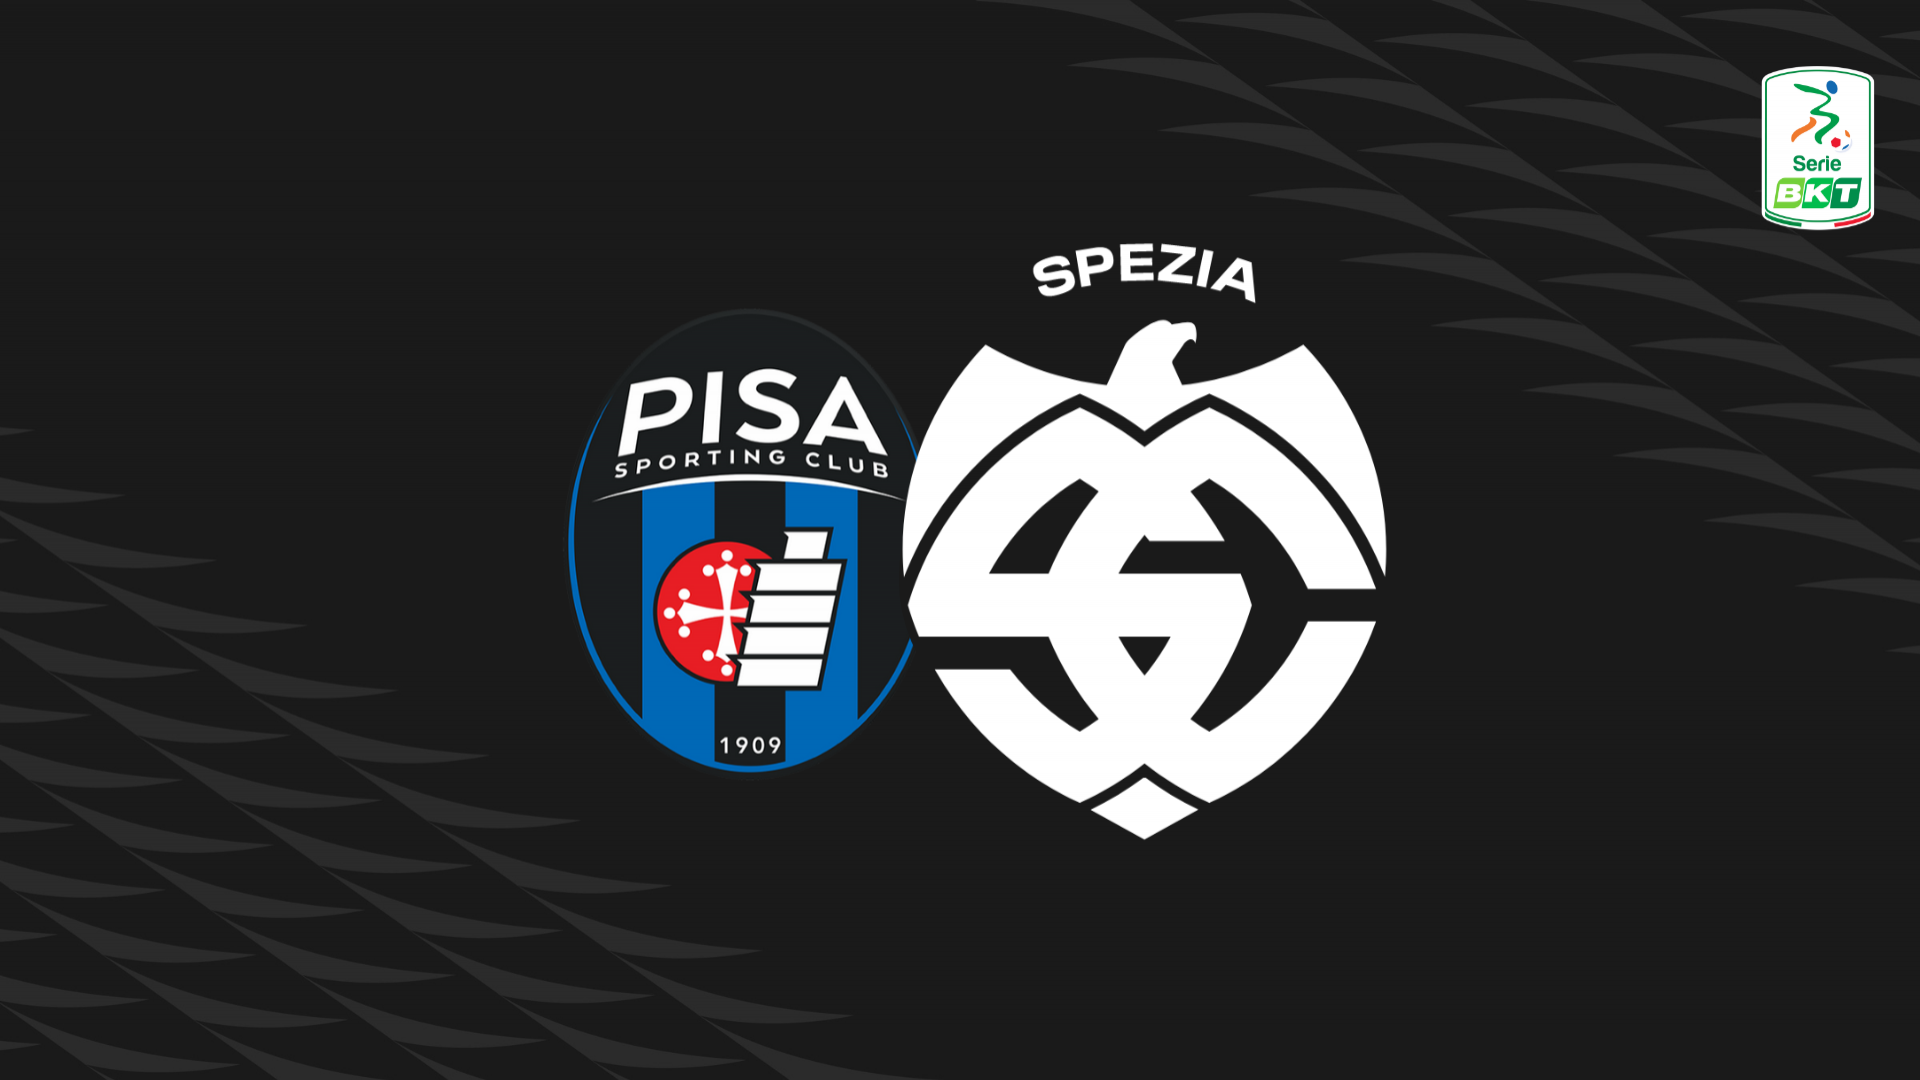 Serie BKT: Pisa-Spezia 2-3